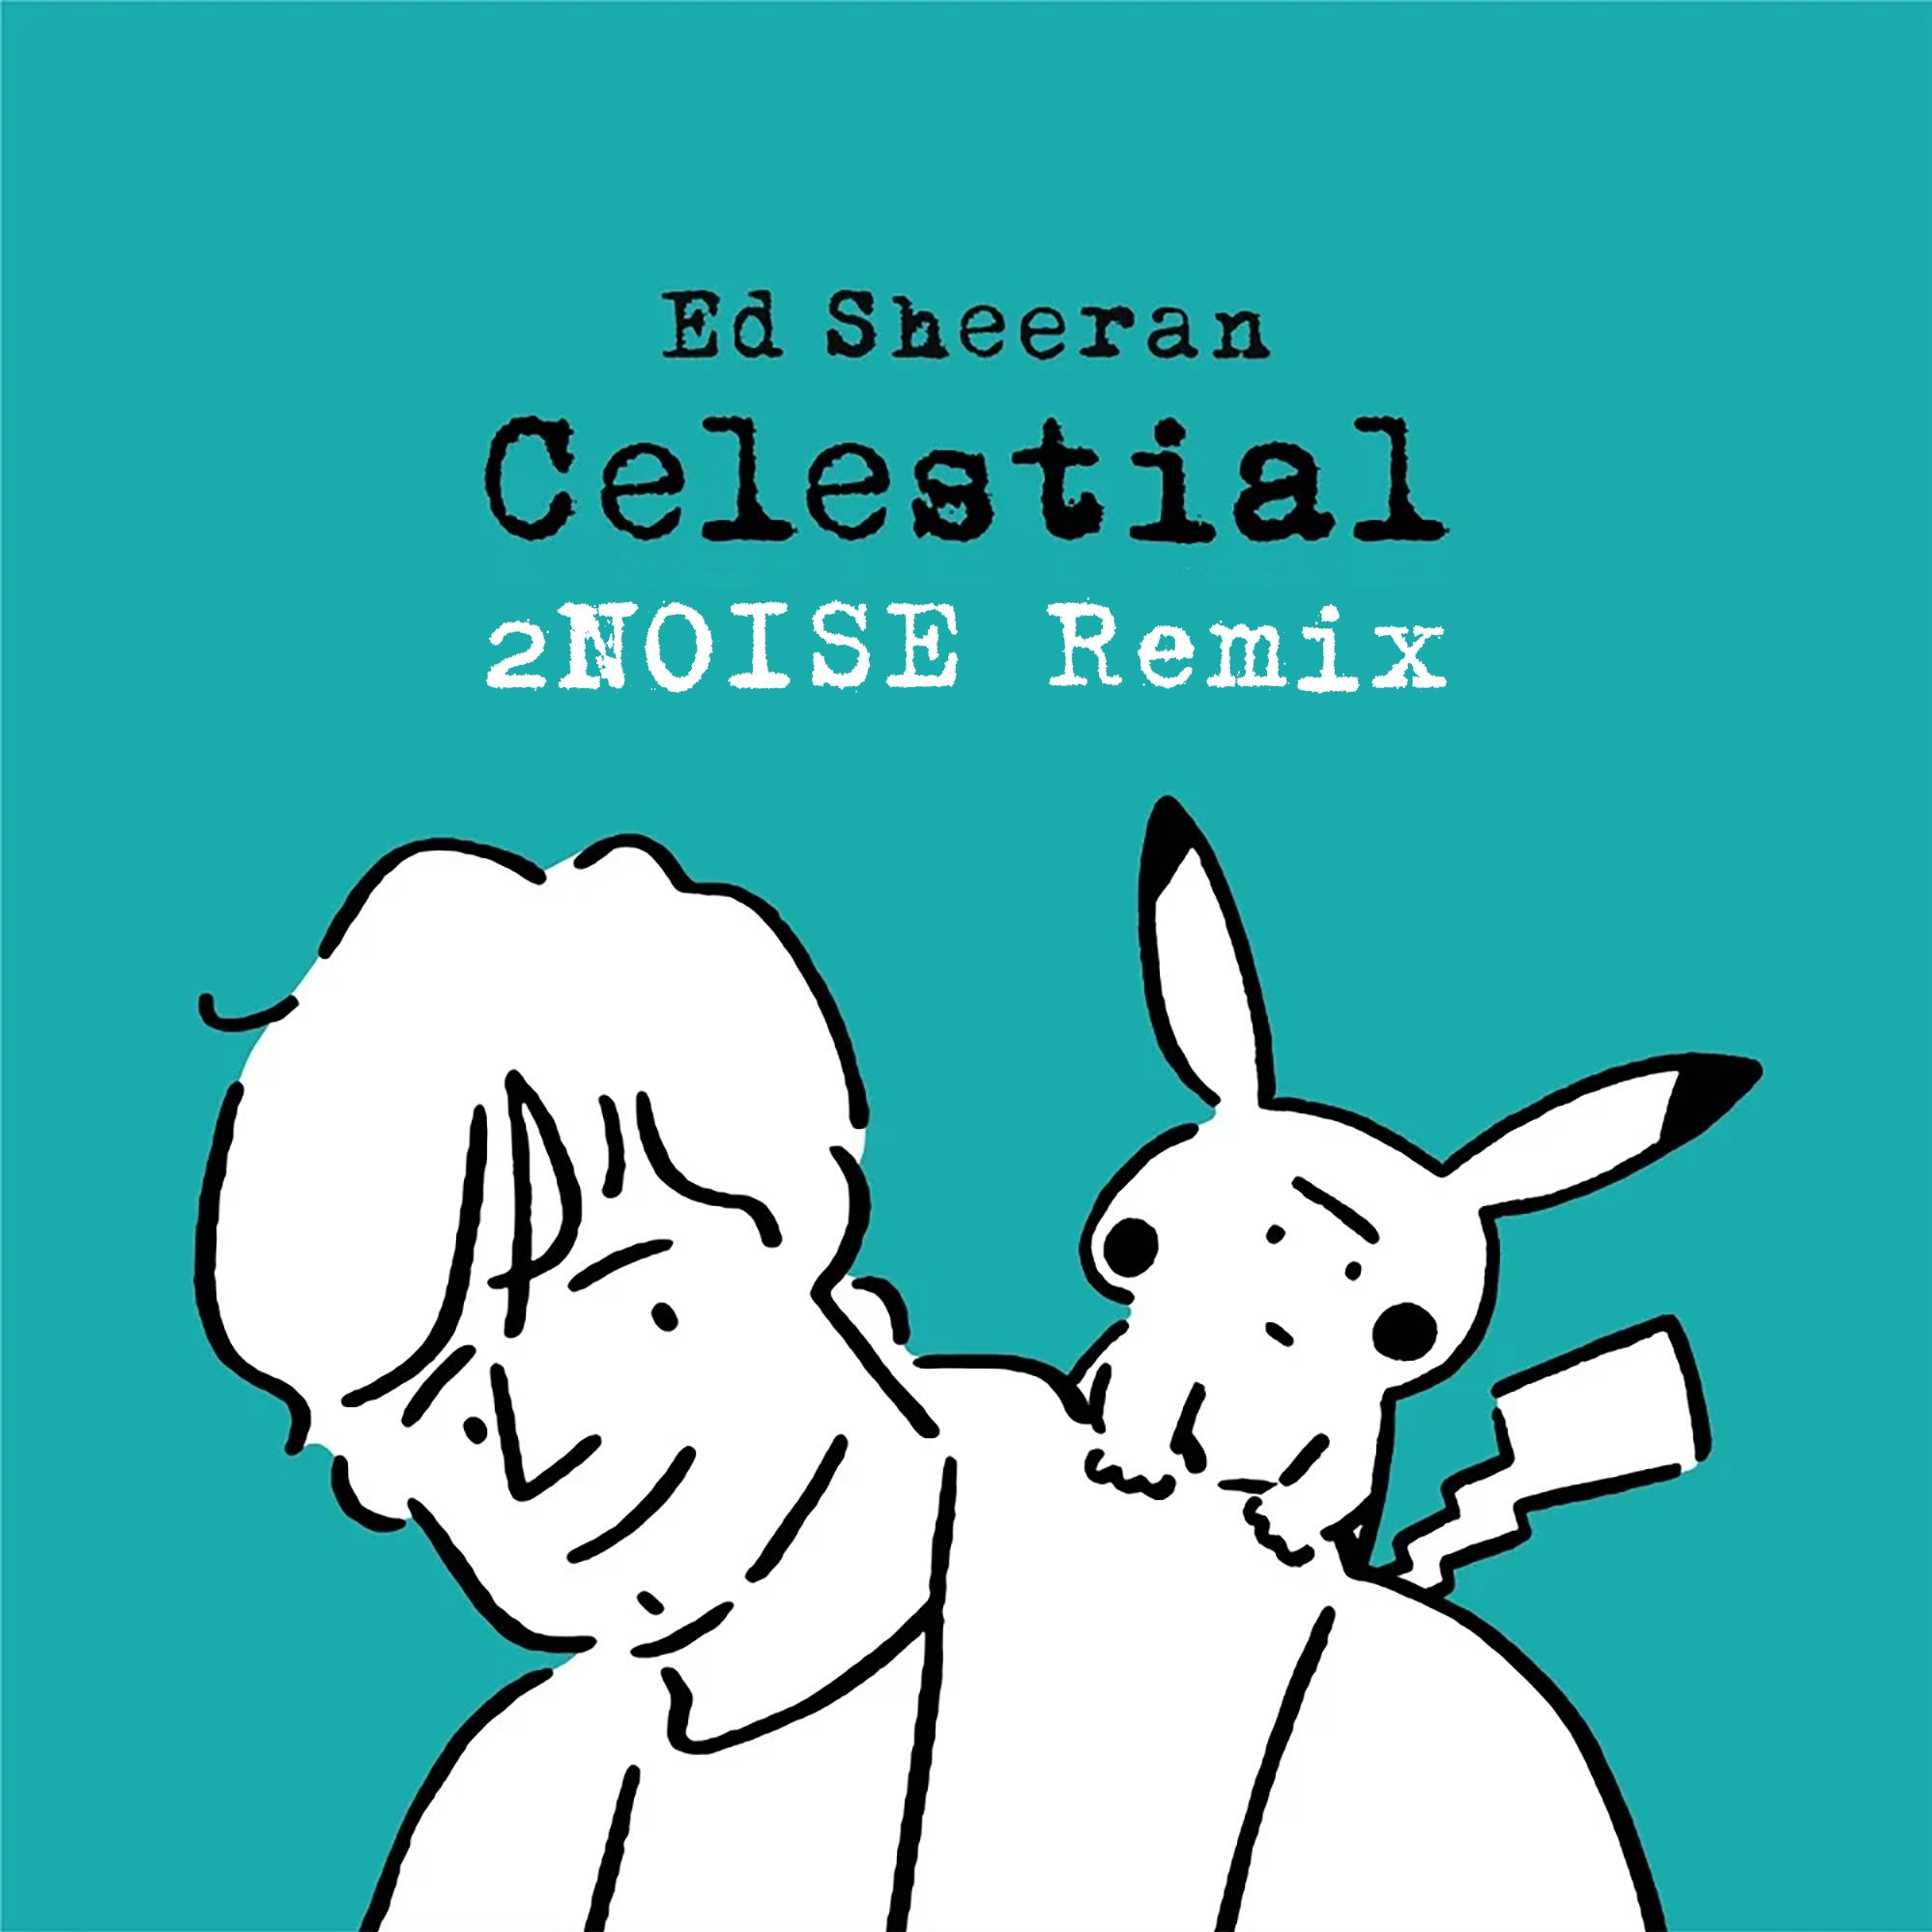 Télécharger Ed Sheeran - Celestial (2NOISE Remix) [Progressive]